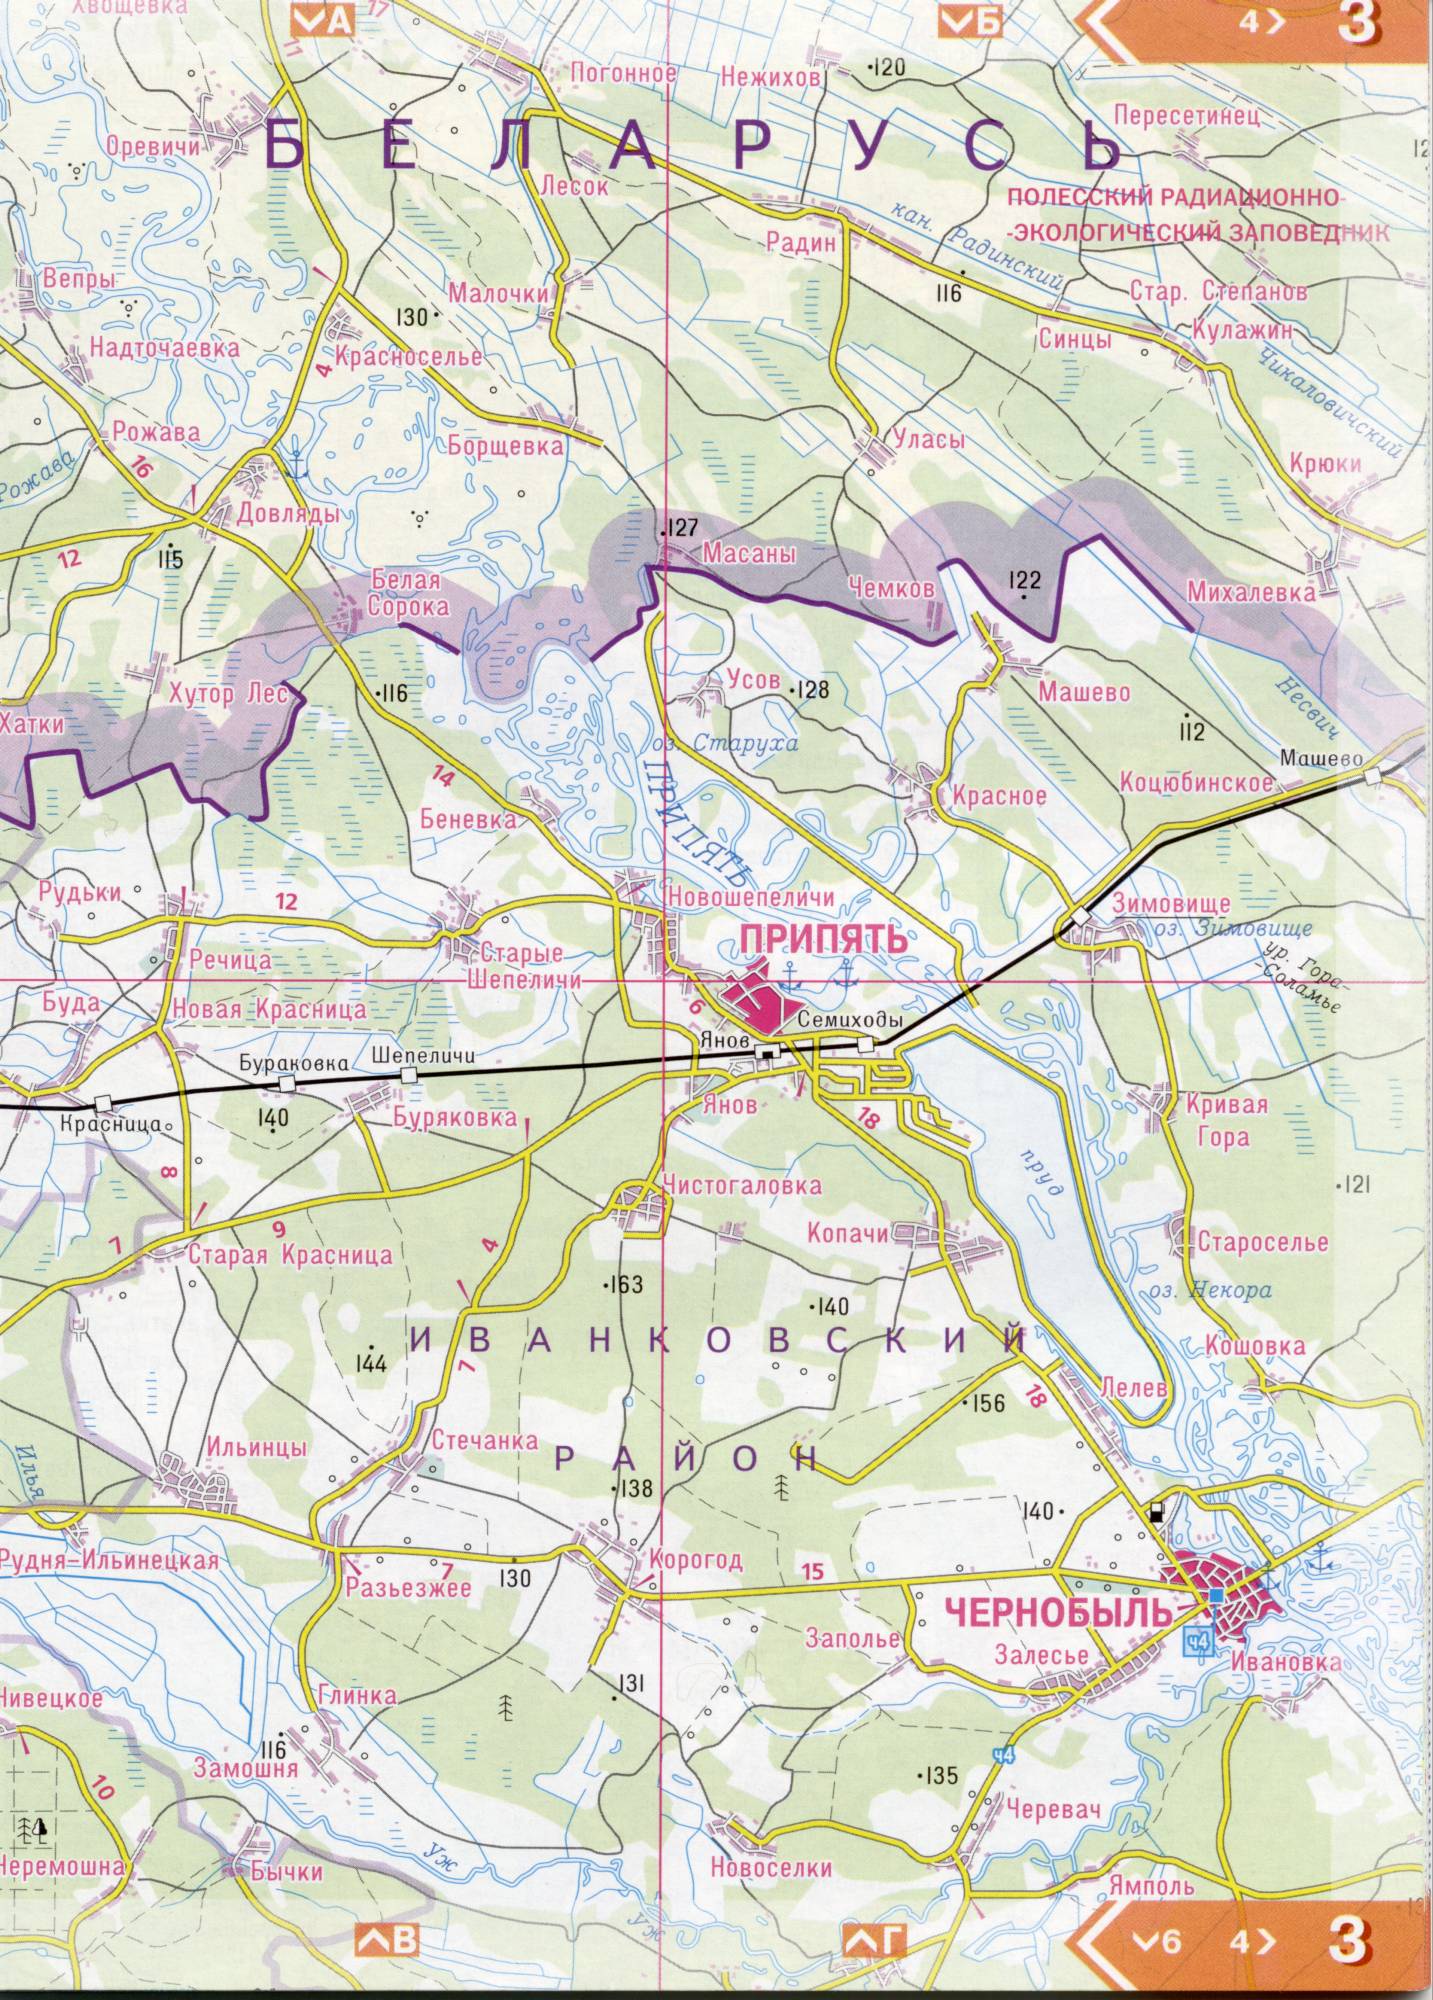 Atlas von der Region Kiew. Eine detaillierte Karte der Region Kiew von dem Atlas von Autobahnen. Kiewer Gebiet auf einer detaillierten Karte Maßstab 1cm = 3km. Frei, B0 - Ulas, Malochki